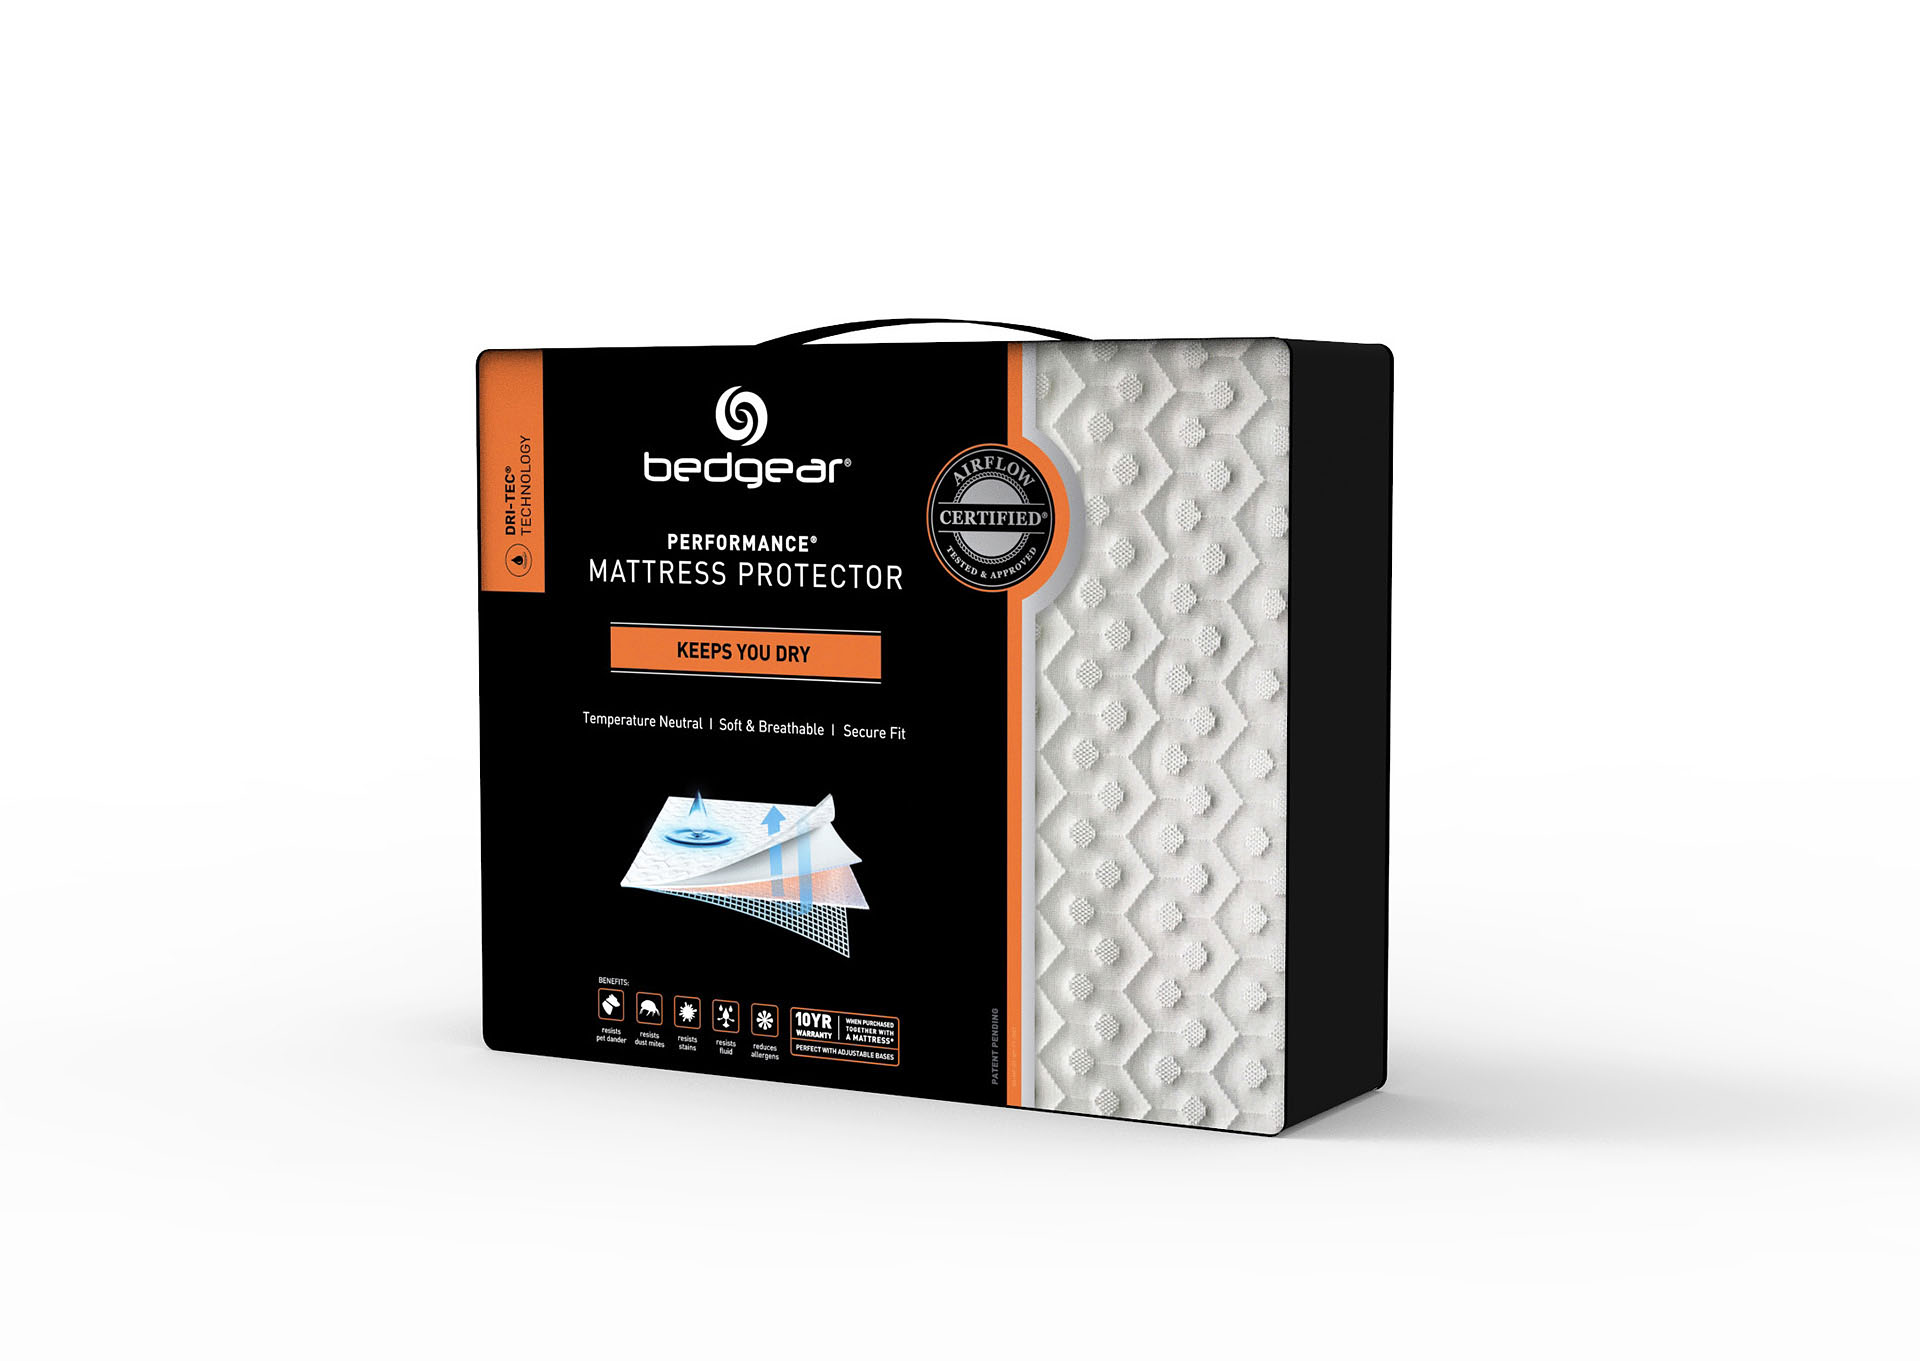 dri tec 5.0 mattress protector review